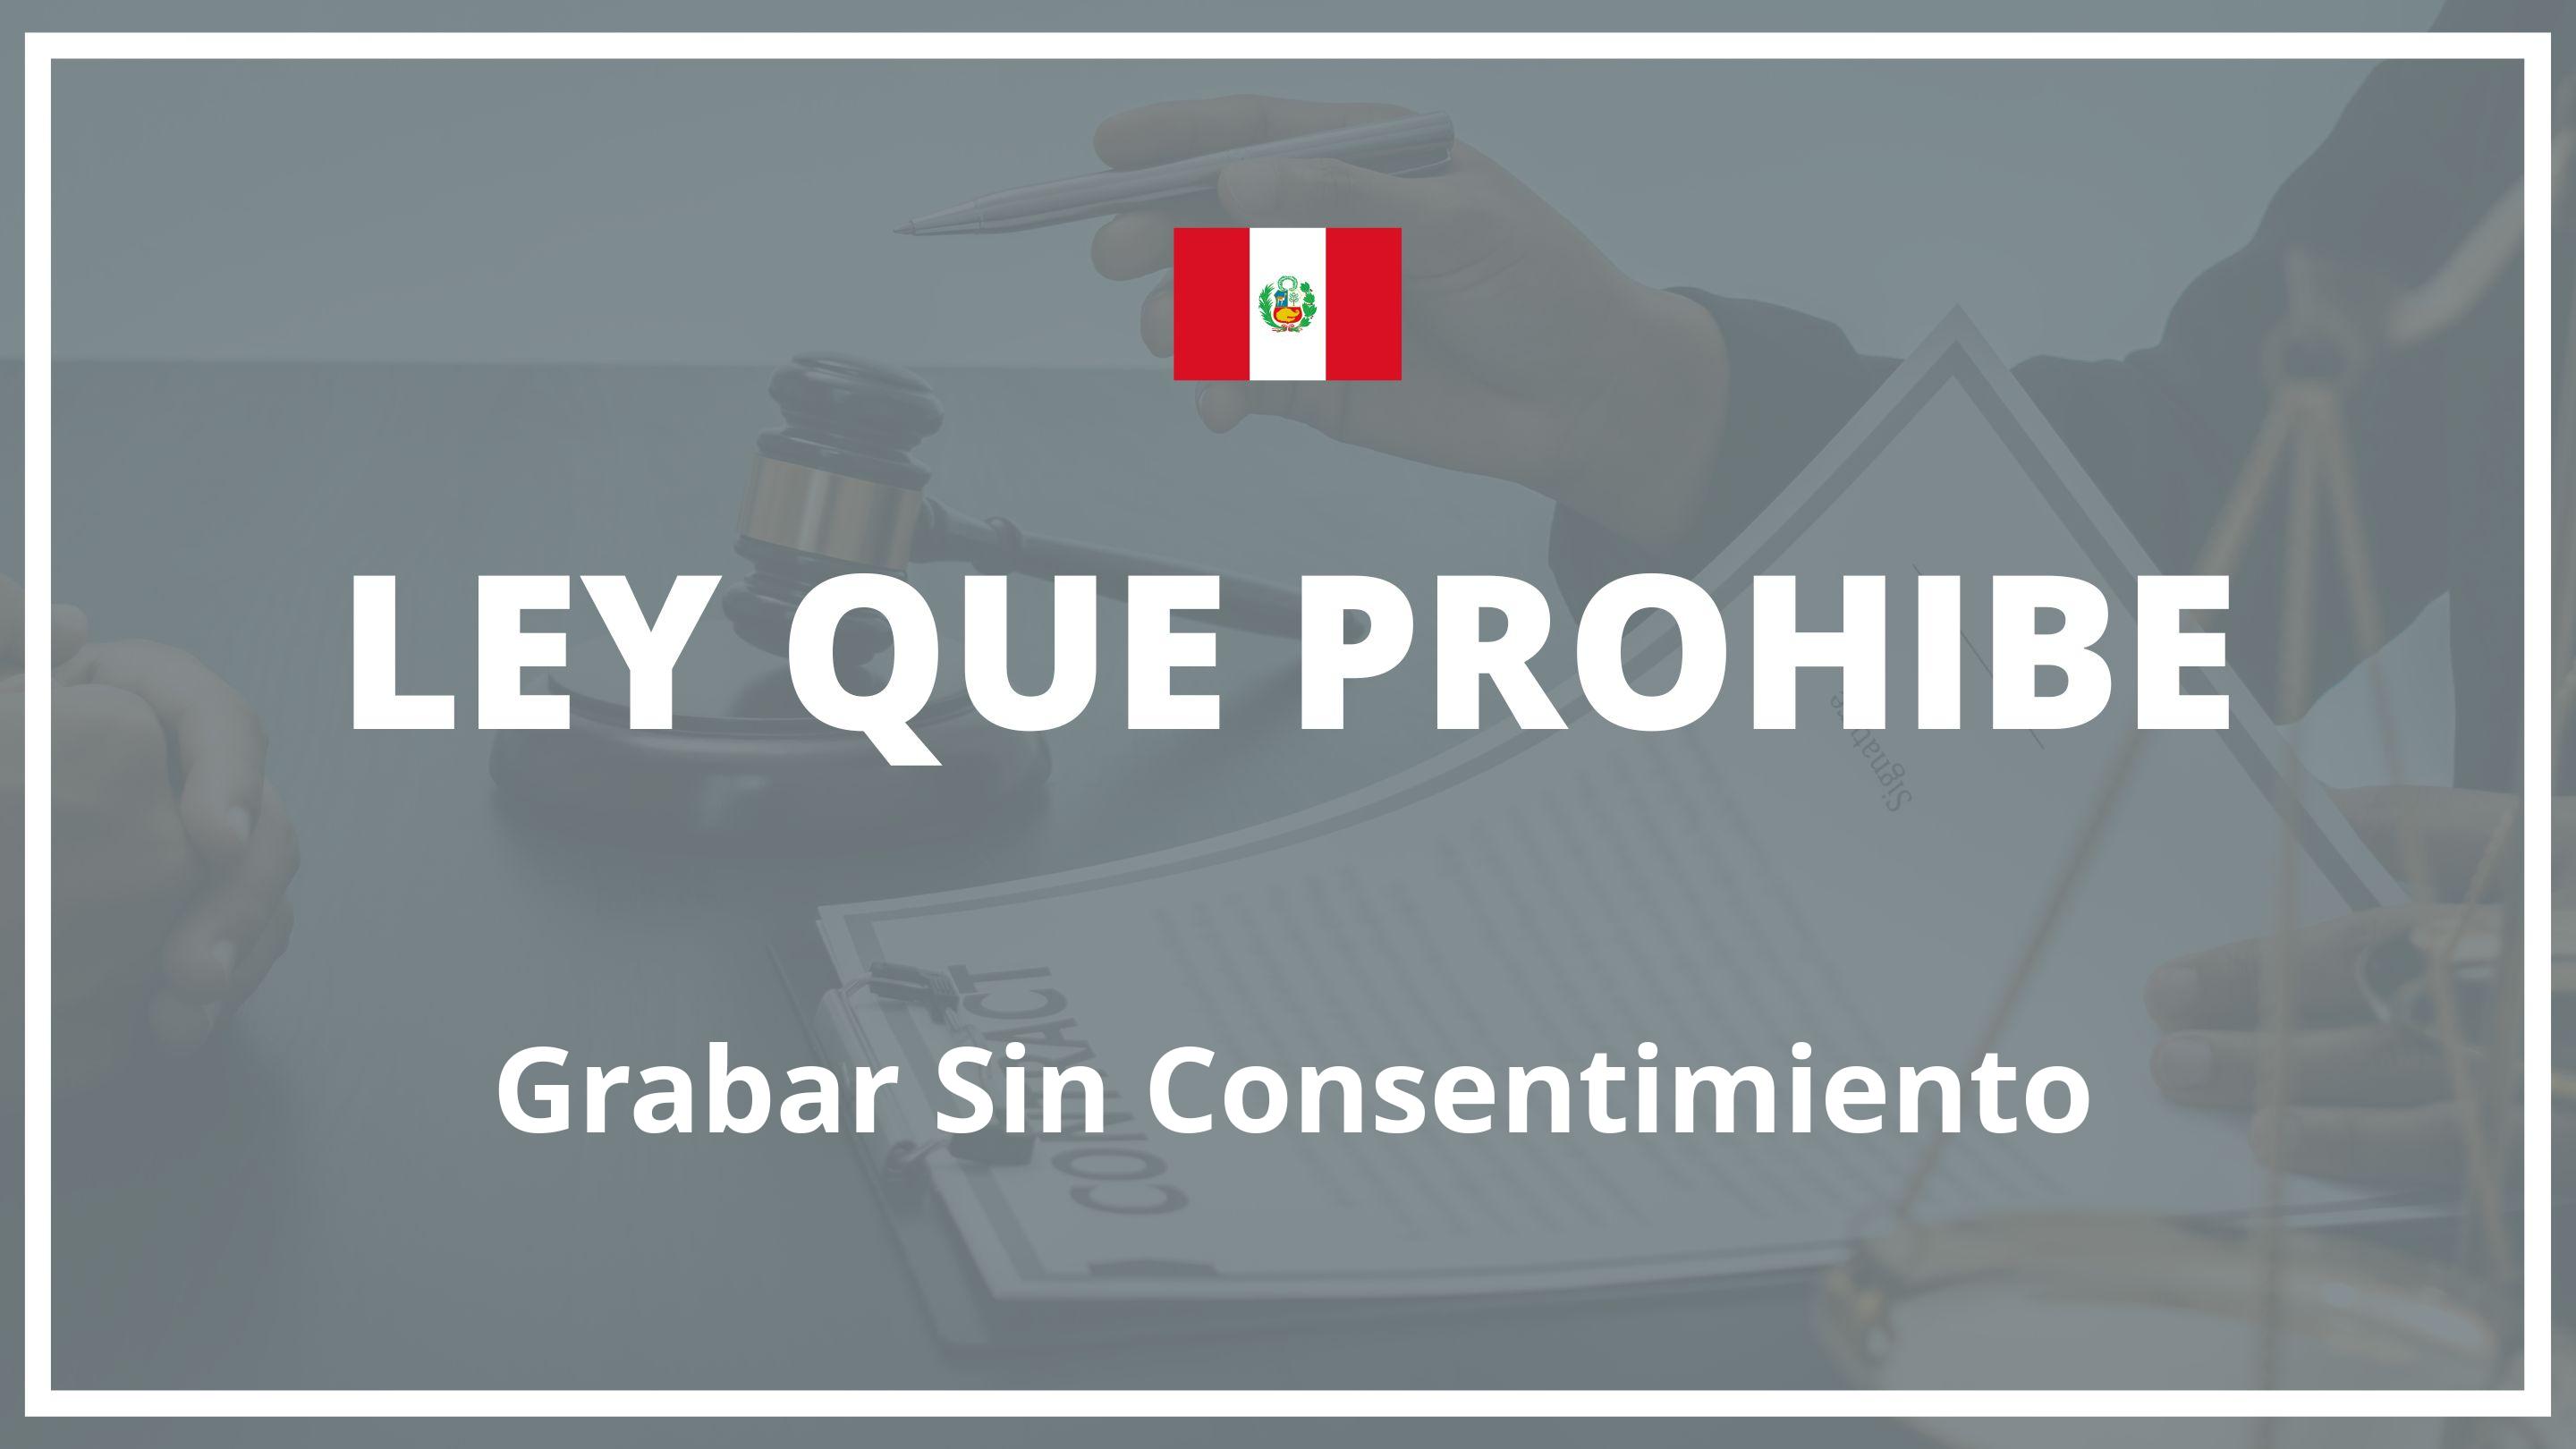 Ley que prohibe grabar sin consentimiento Peru